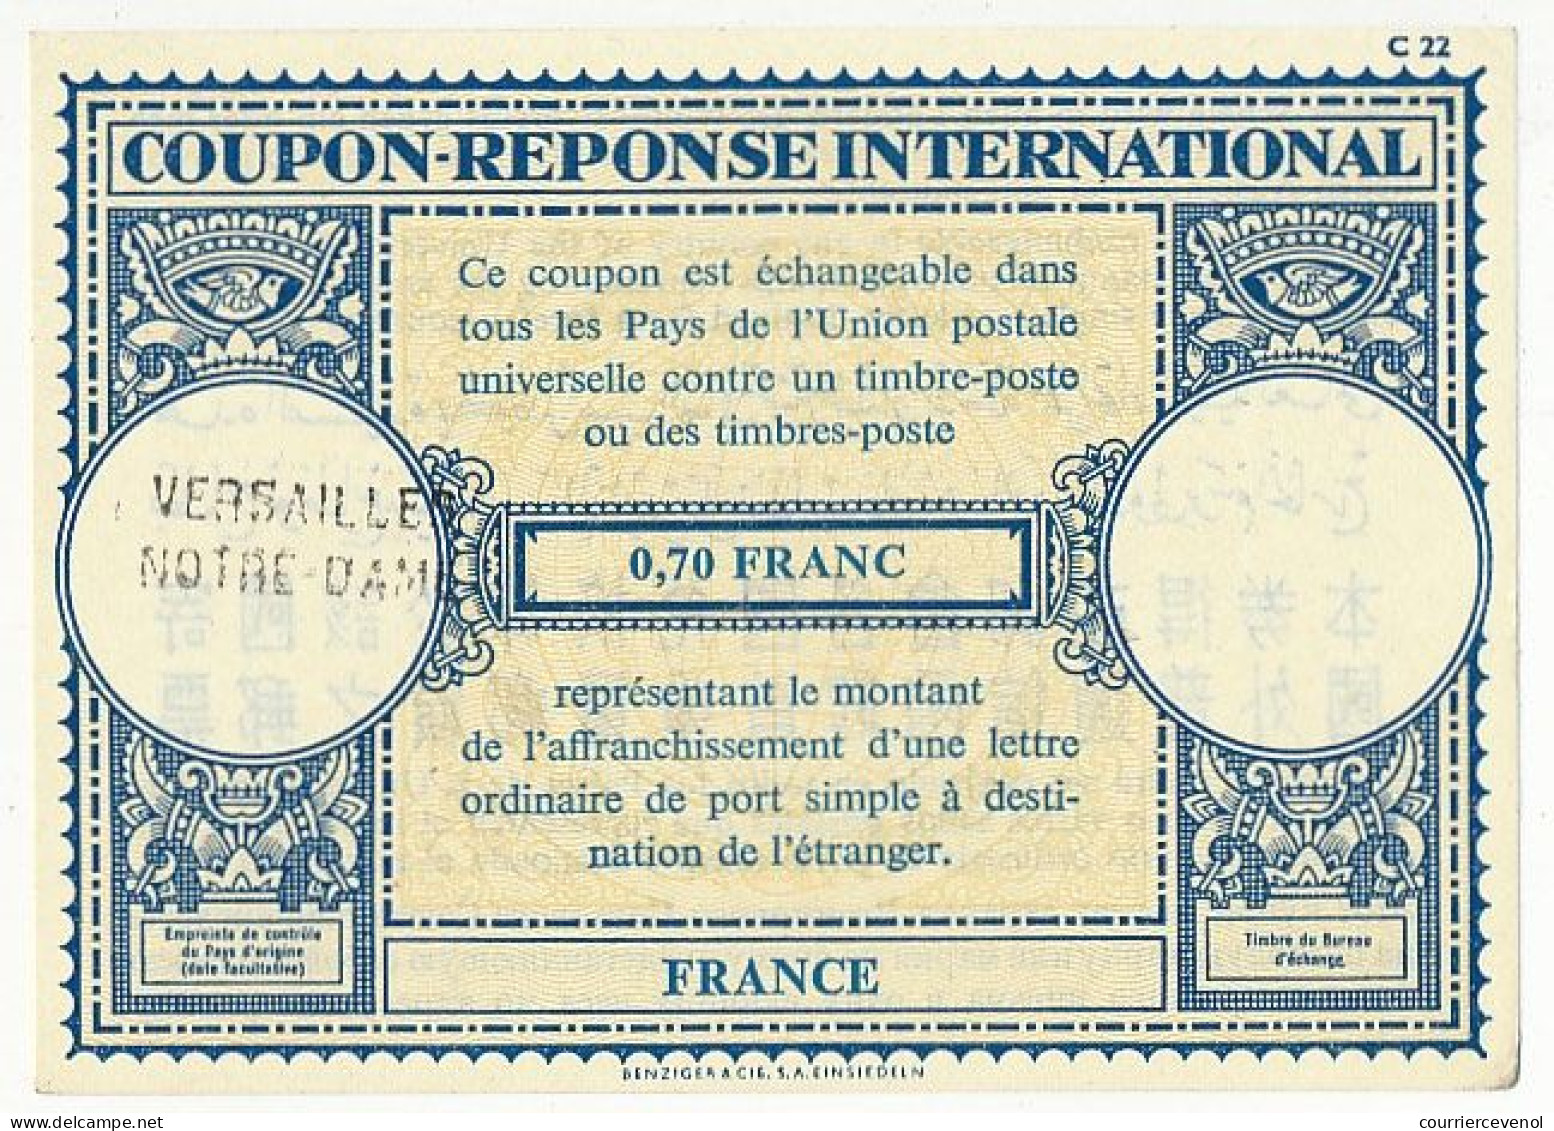 Coupon-Réponse International 0,70 Franc - Cachet Linéaire Versailles Notre Dame - Coupons-réponse